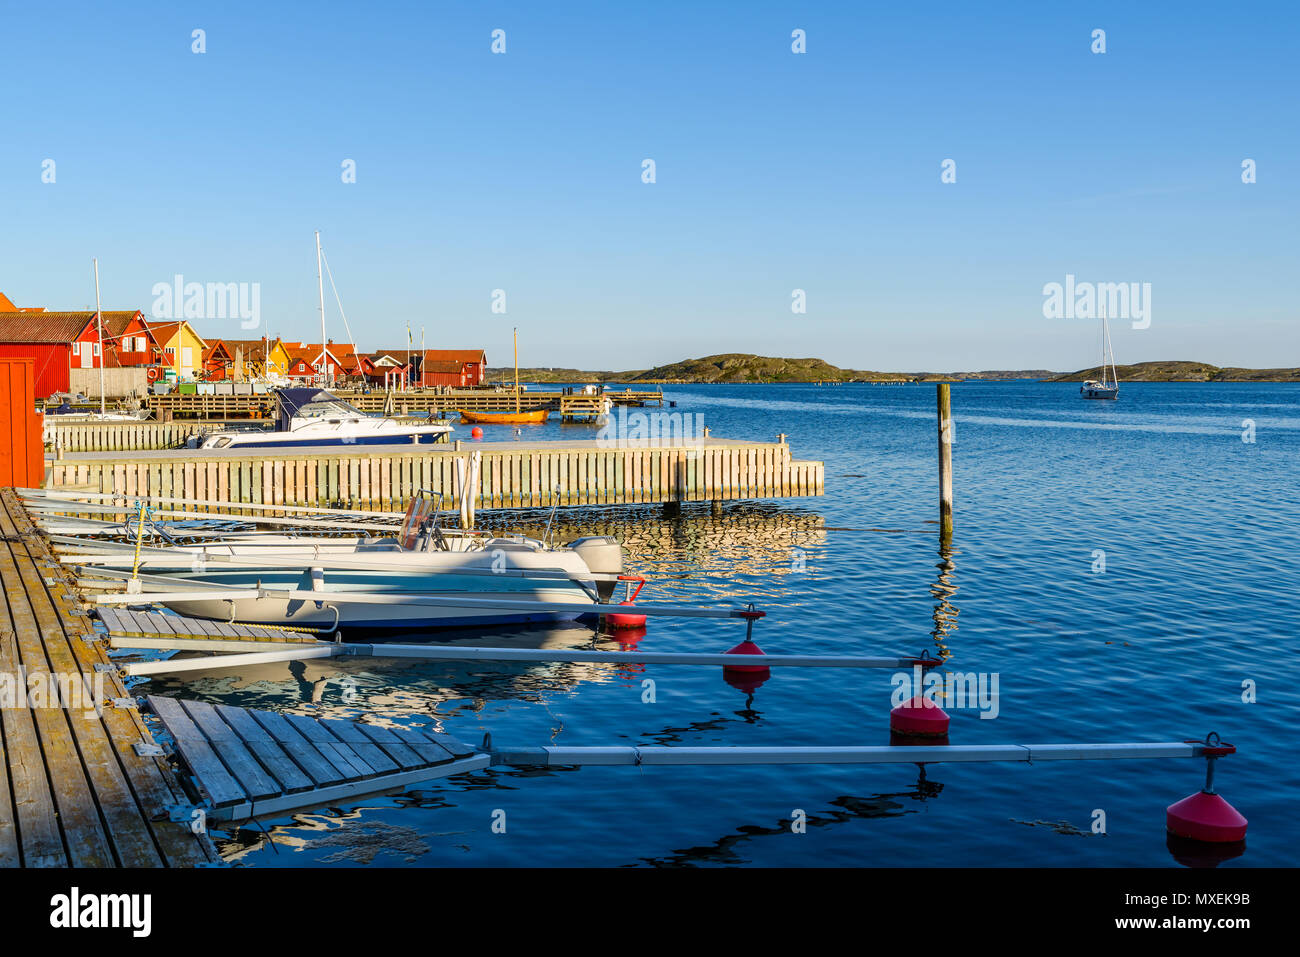 Le quartier du port du village côtier Mollosund sur Orust, Suède, dans un cadre ensoleillé et calme le soir. Banque D'Images